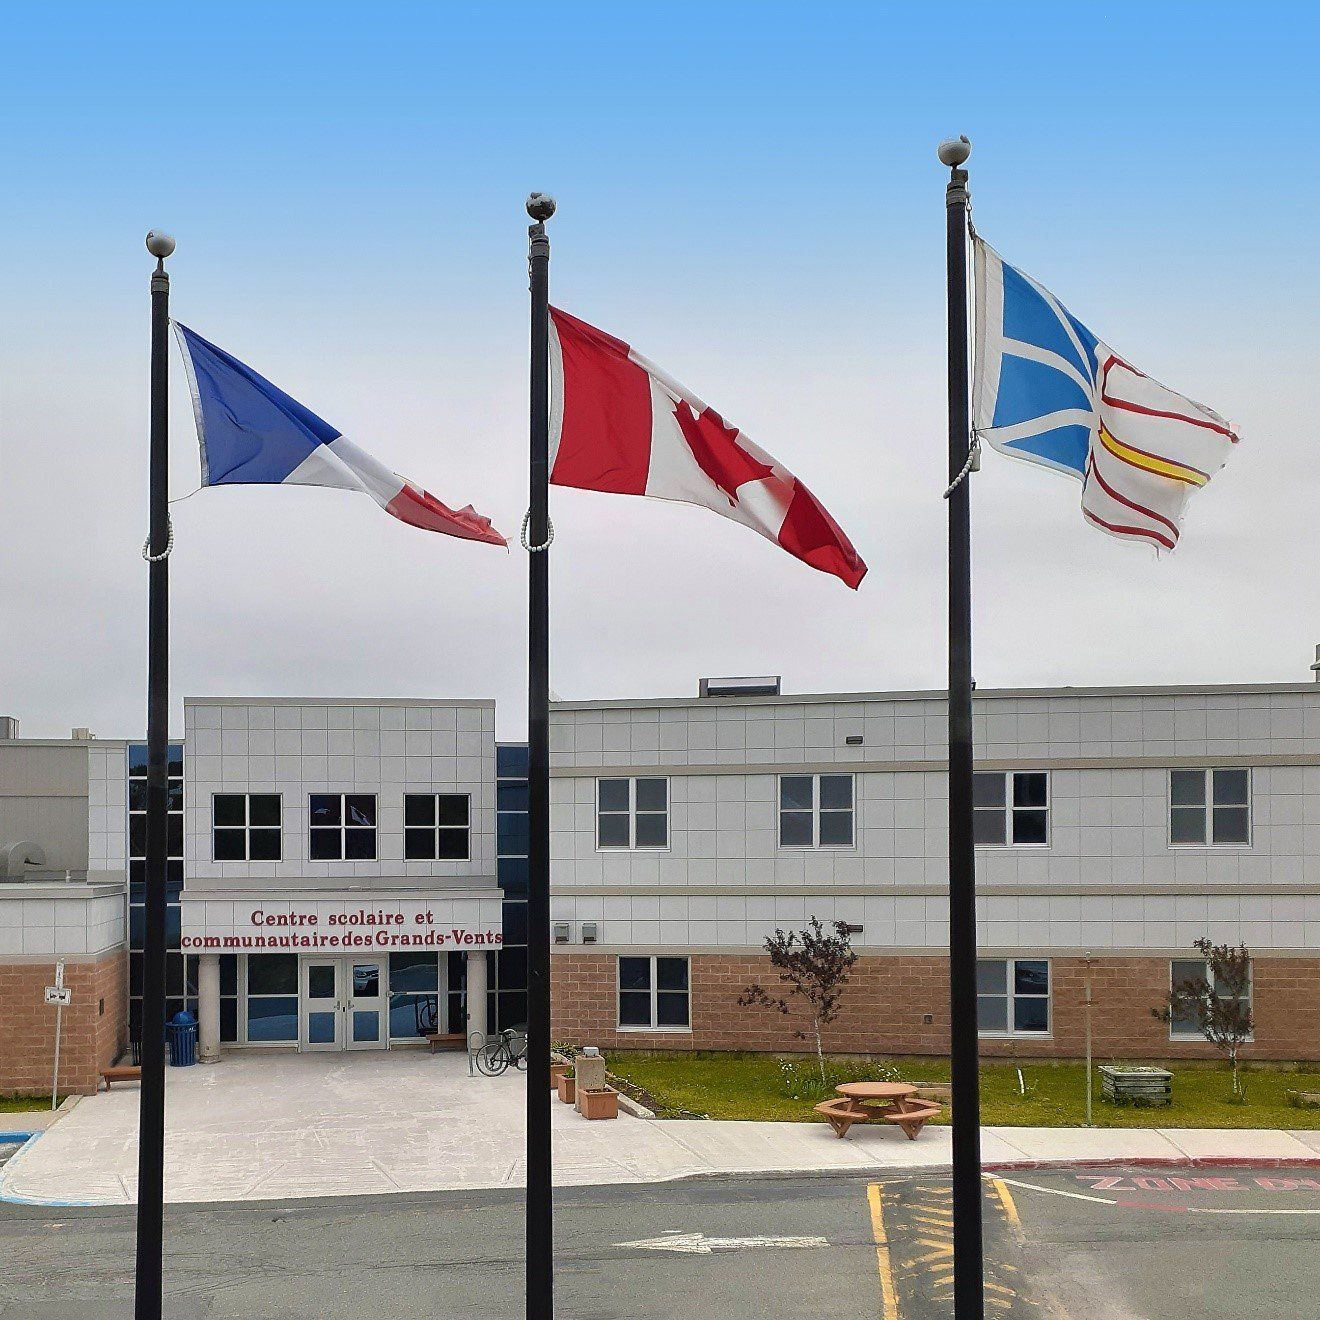 Les drapeaux devant l'entrée du Centre scolaire et communautaire des Grands-Vents.